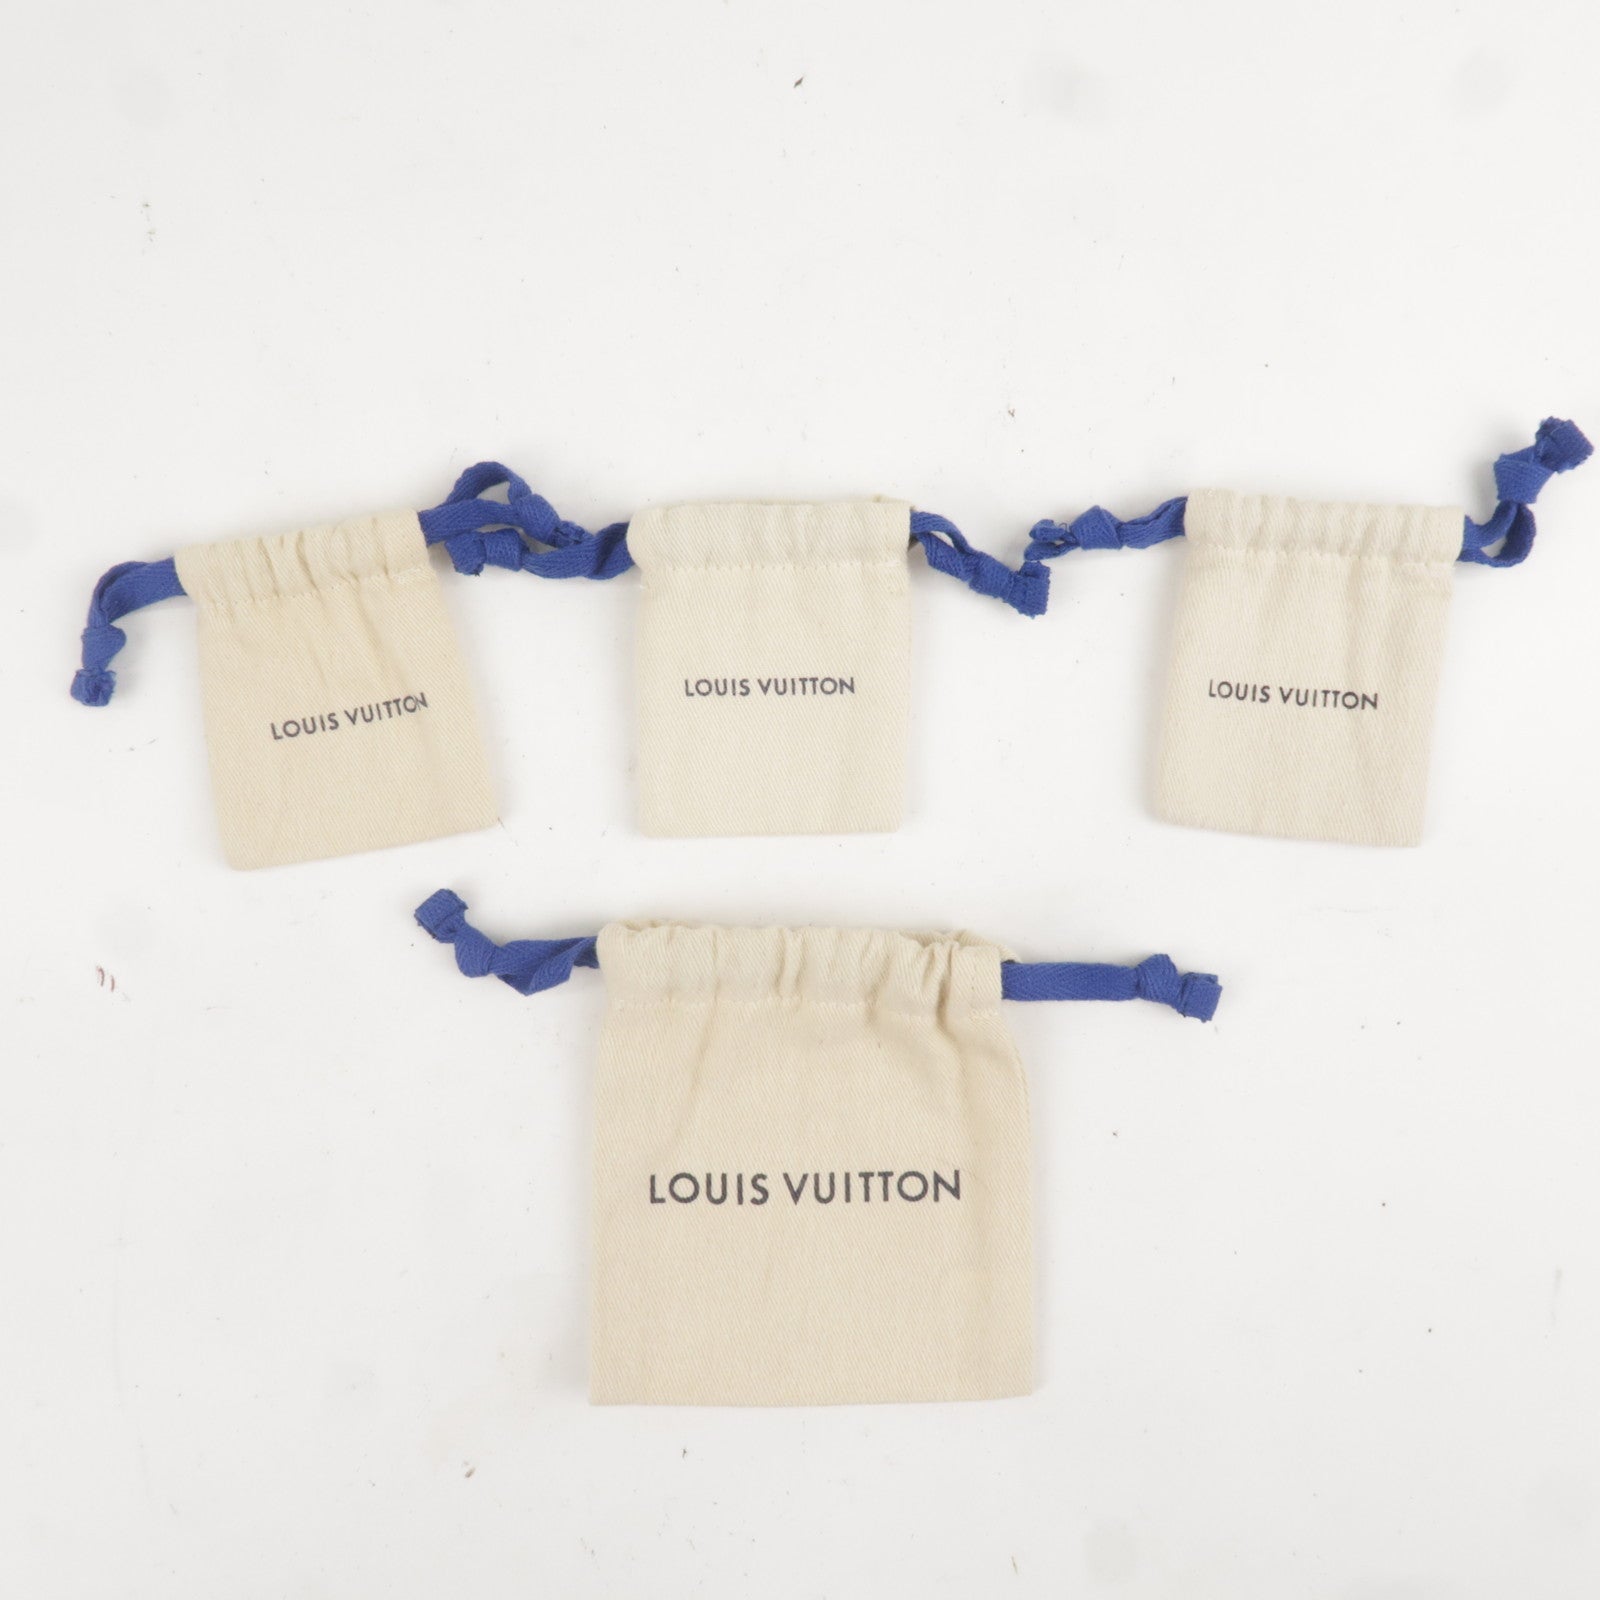 Authentic LOUIS VUITTON dust bag